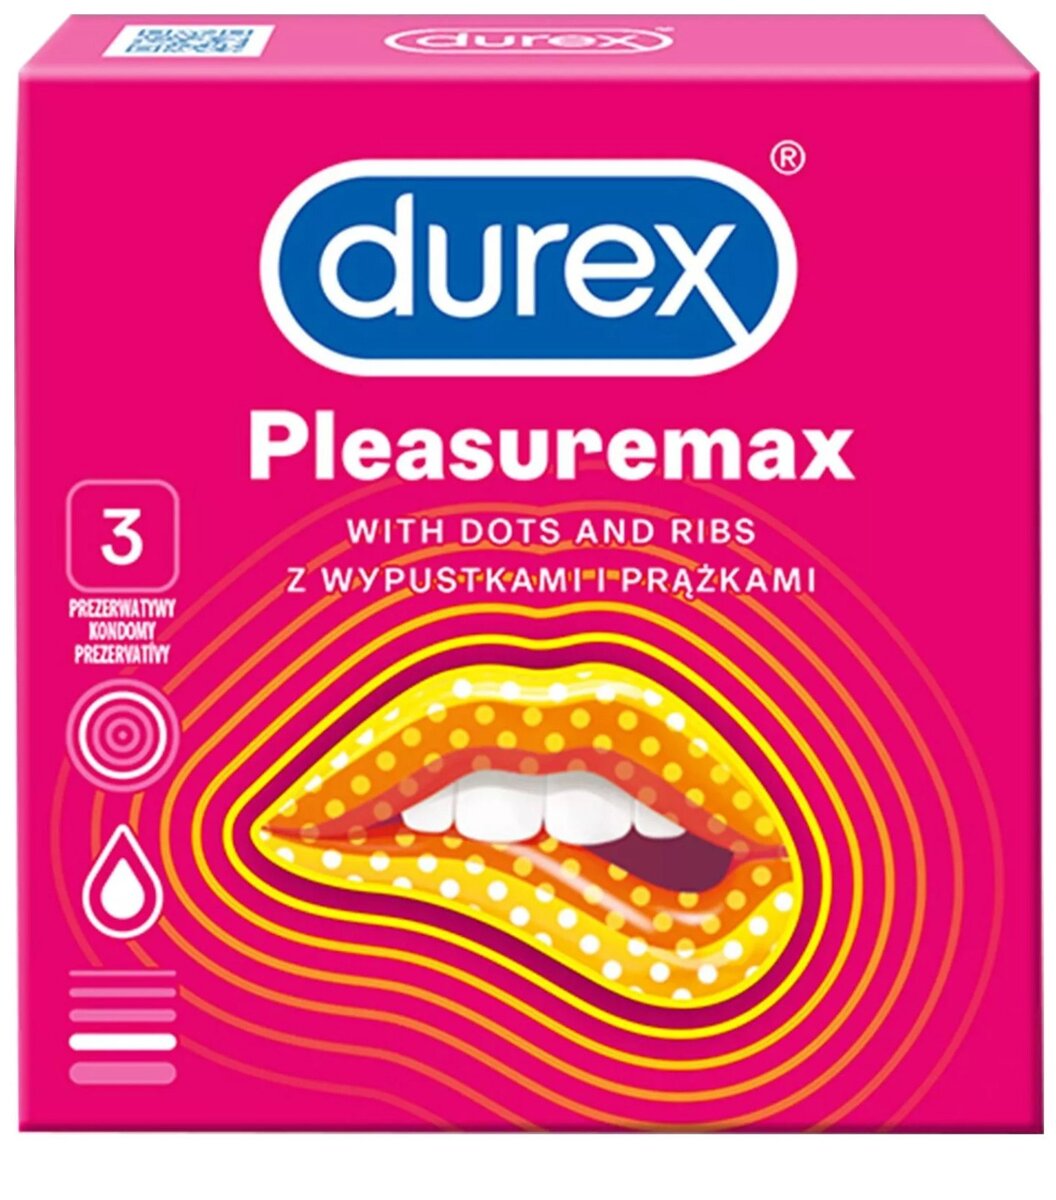 Kondomy Pleasuremax - Durex 3 ks